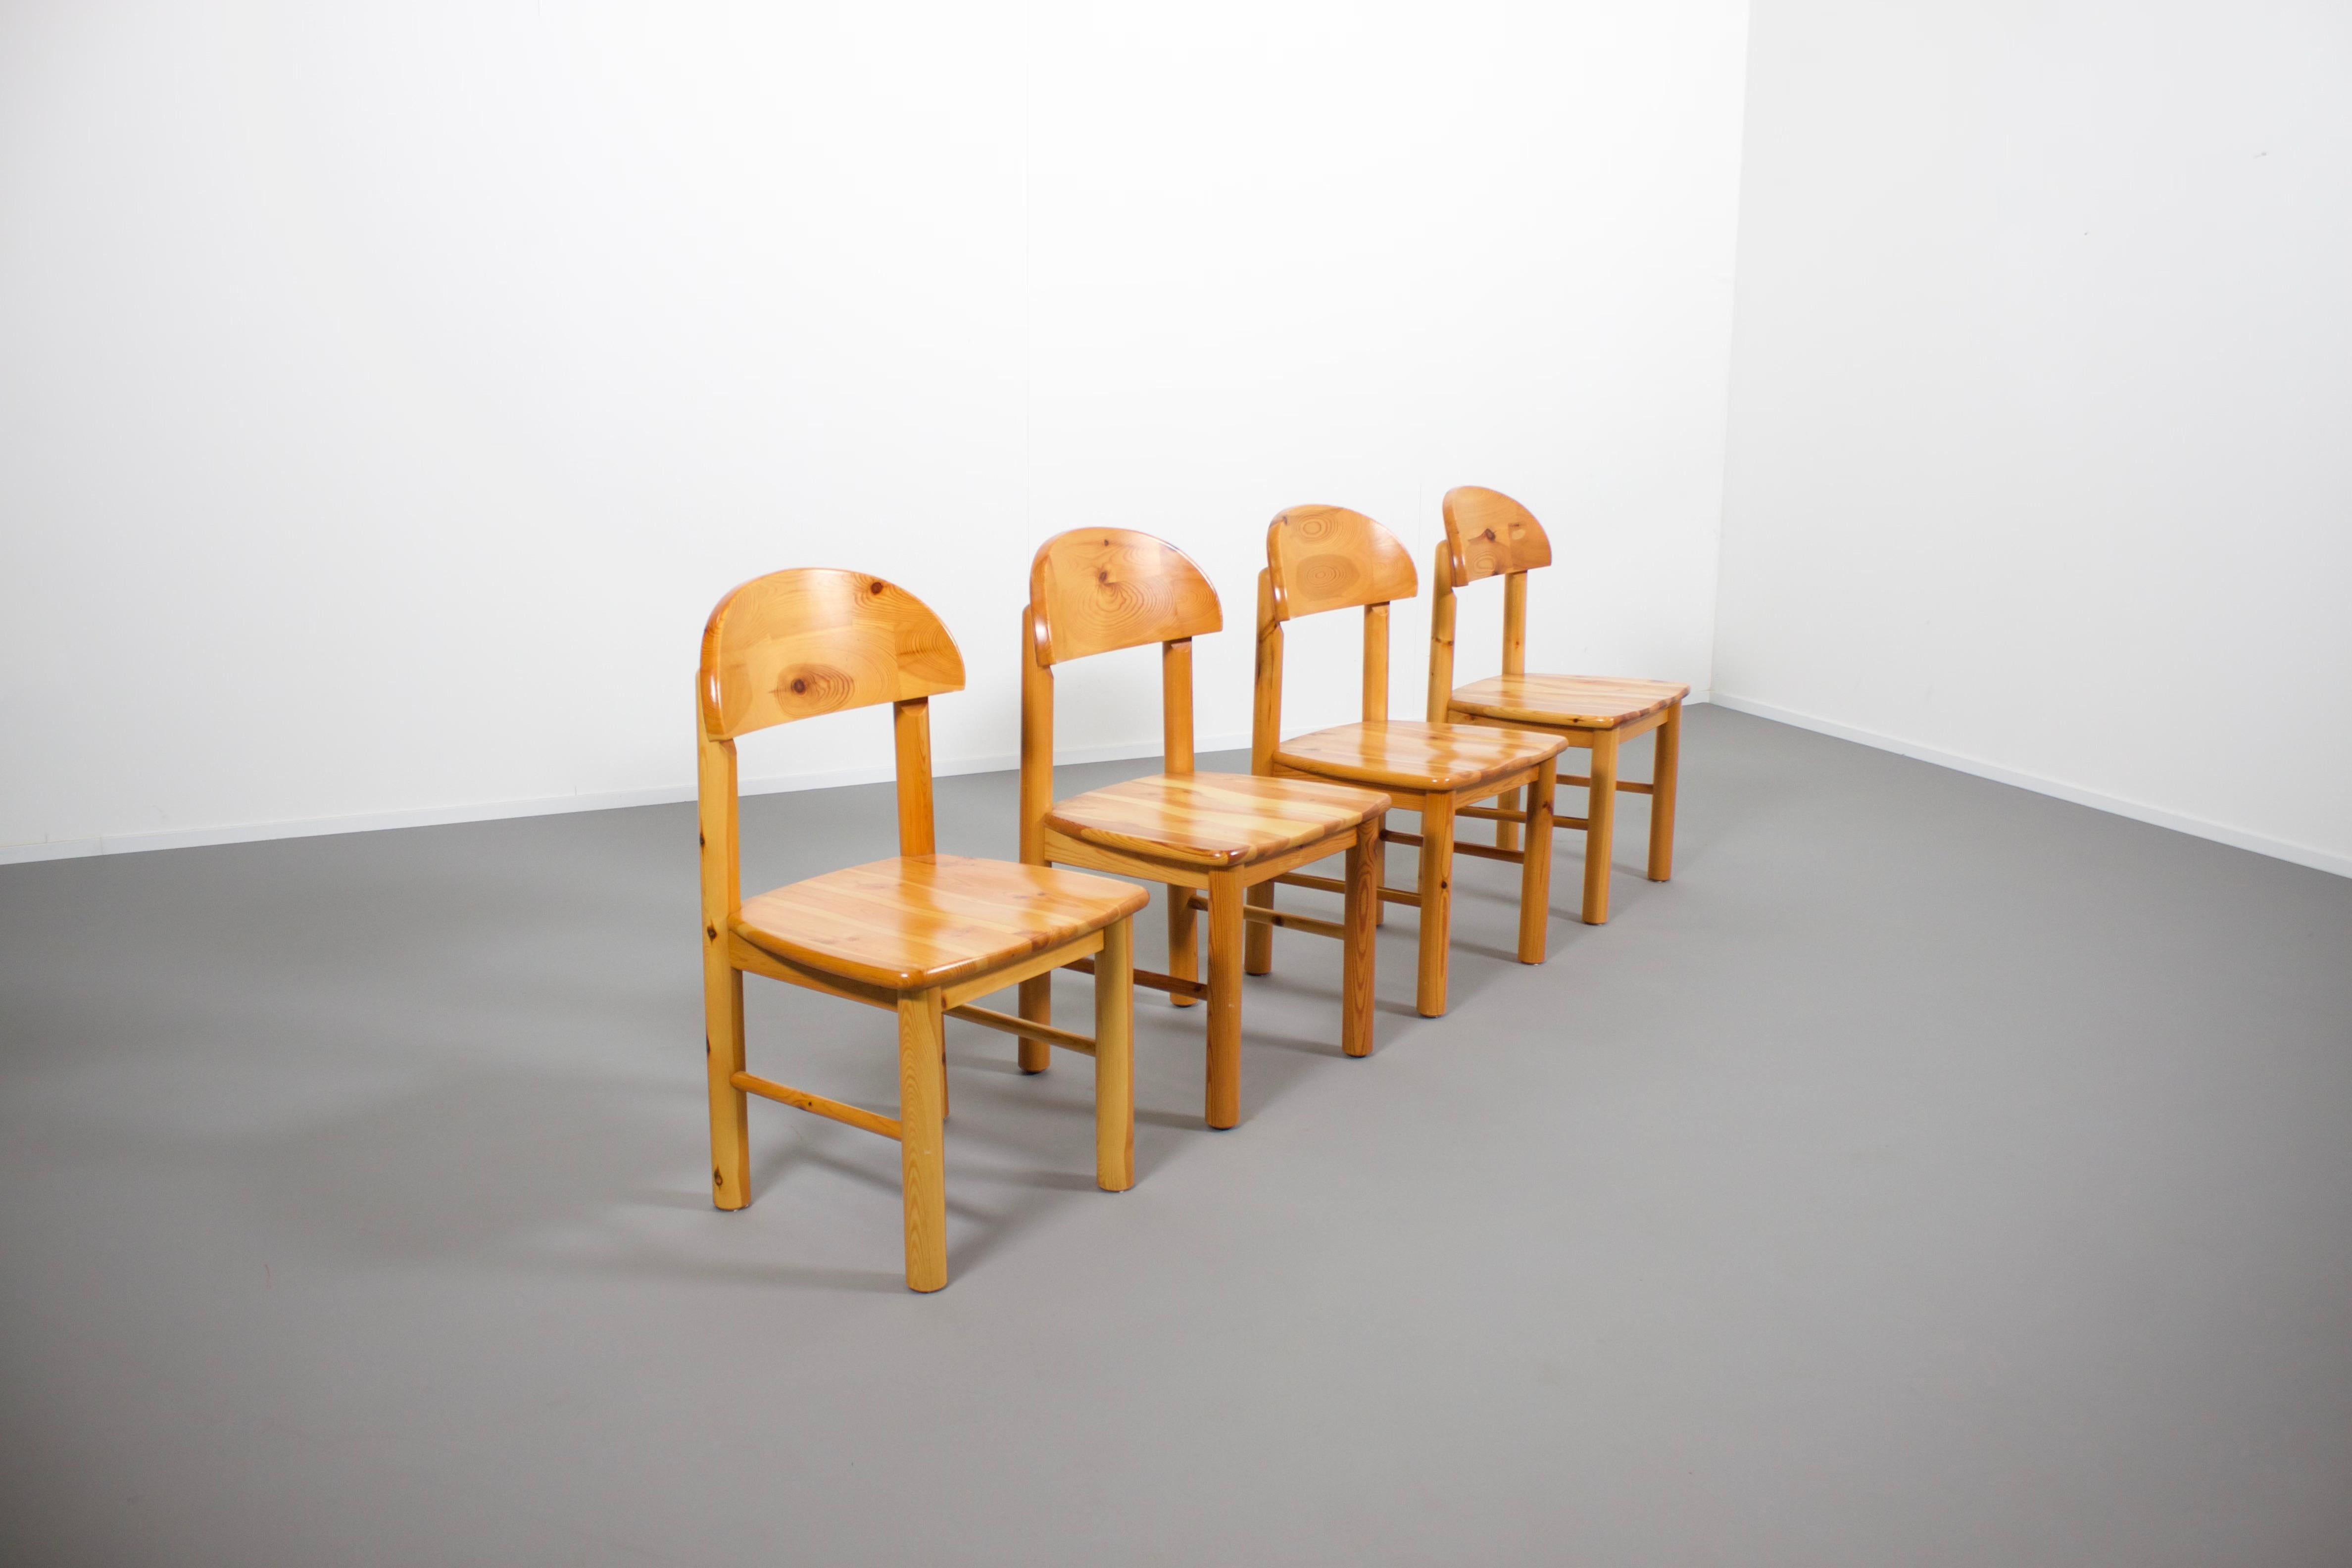 Ensemble de quatre chaises en bois de pin massif en très bon état.

Conçu par Rainer Daumiller et fabriqué par Hirtshals Savvaerk dans les années 1970 

Les chaises ont une assise et un dossier sculptés qui leur donnent un aspect robuste et